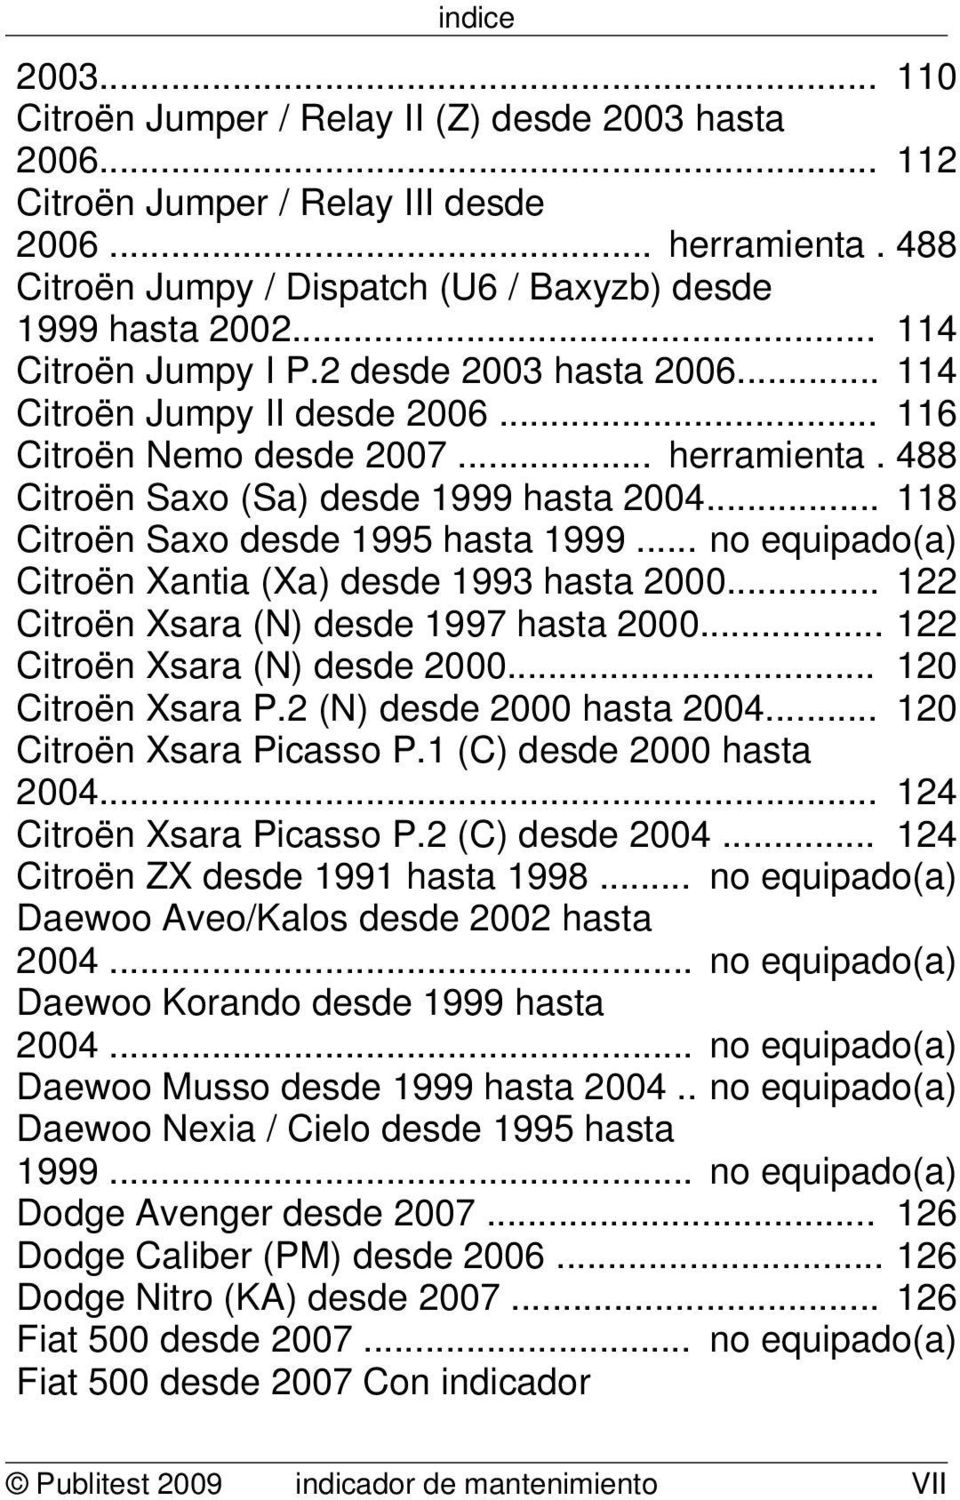 .. 118 Citroën Saxo desde 1995 hasta 1999... no equipado(a) Citroën Xantia (Xa) desde 1993 hasta 2000... 122 Citroën Xsara (N) desde 1997 hasta 2000... 122 Citroën Xsara (N) desde 2000.